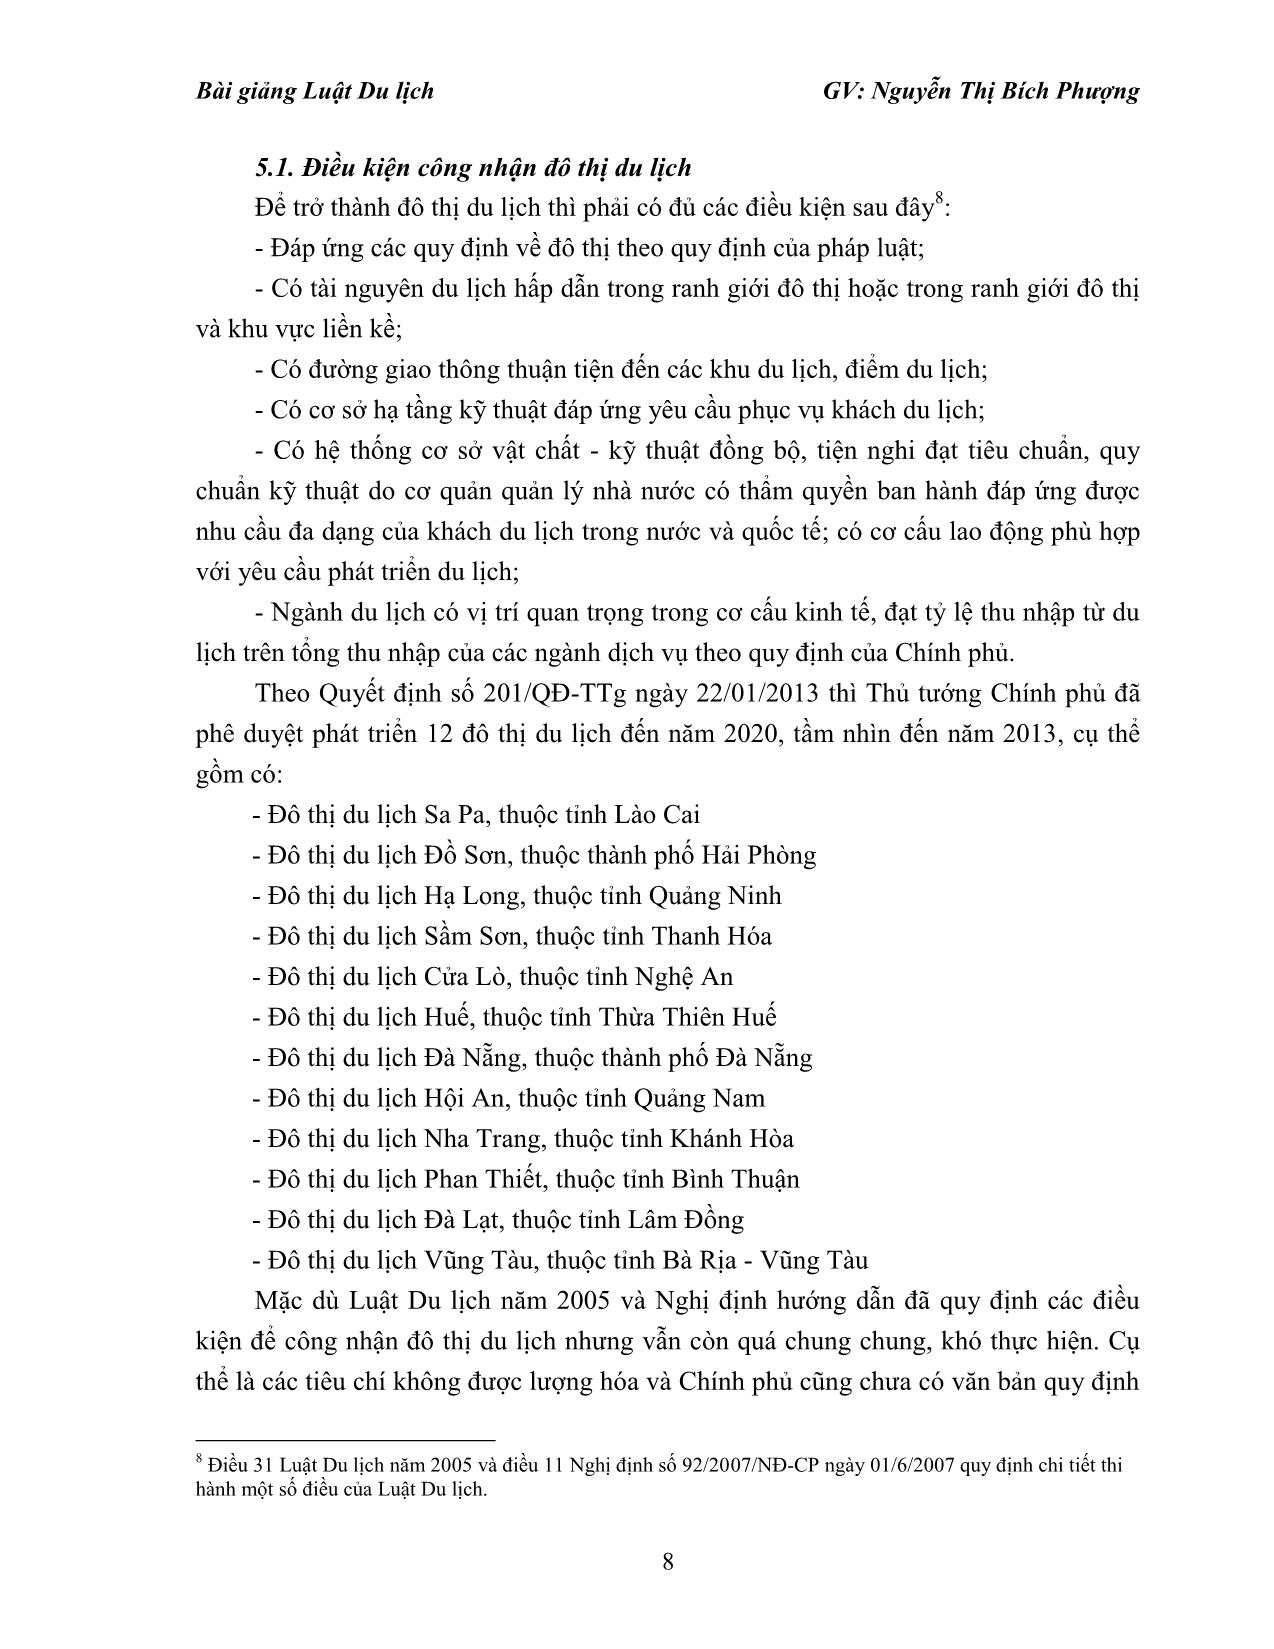 Bài giảng Luật du lịch - Nguyễn Thị Bích Phượng trang 8